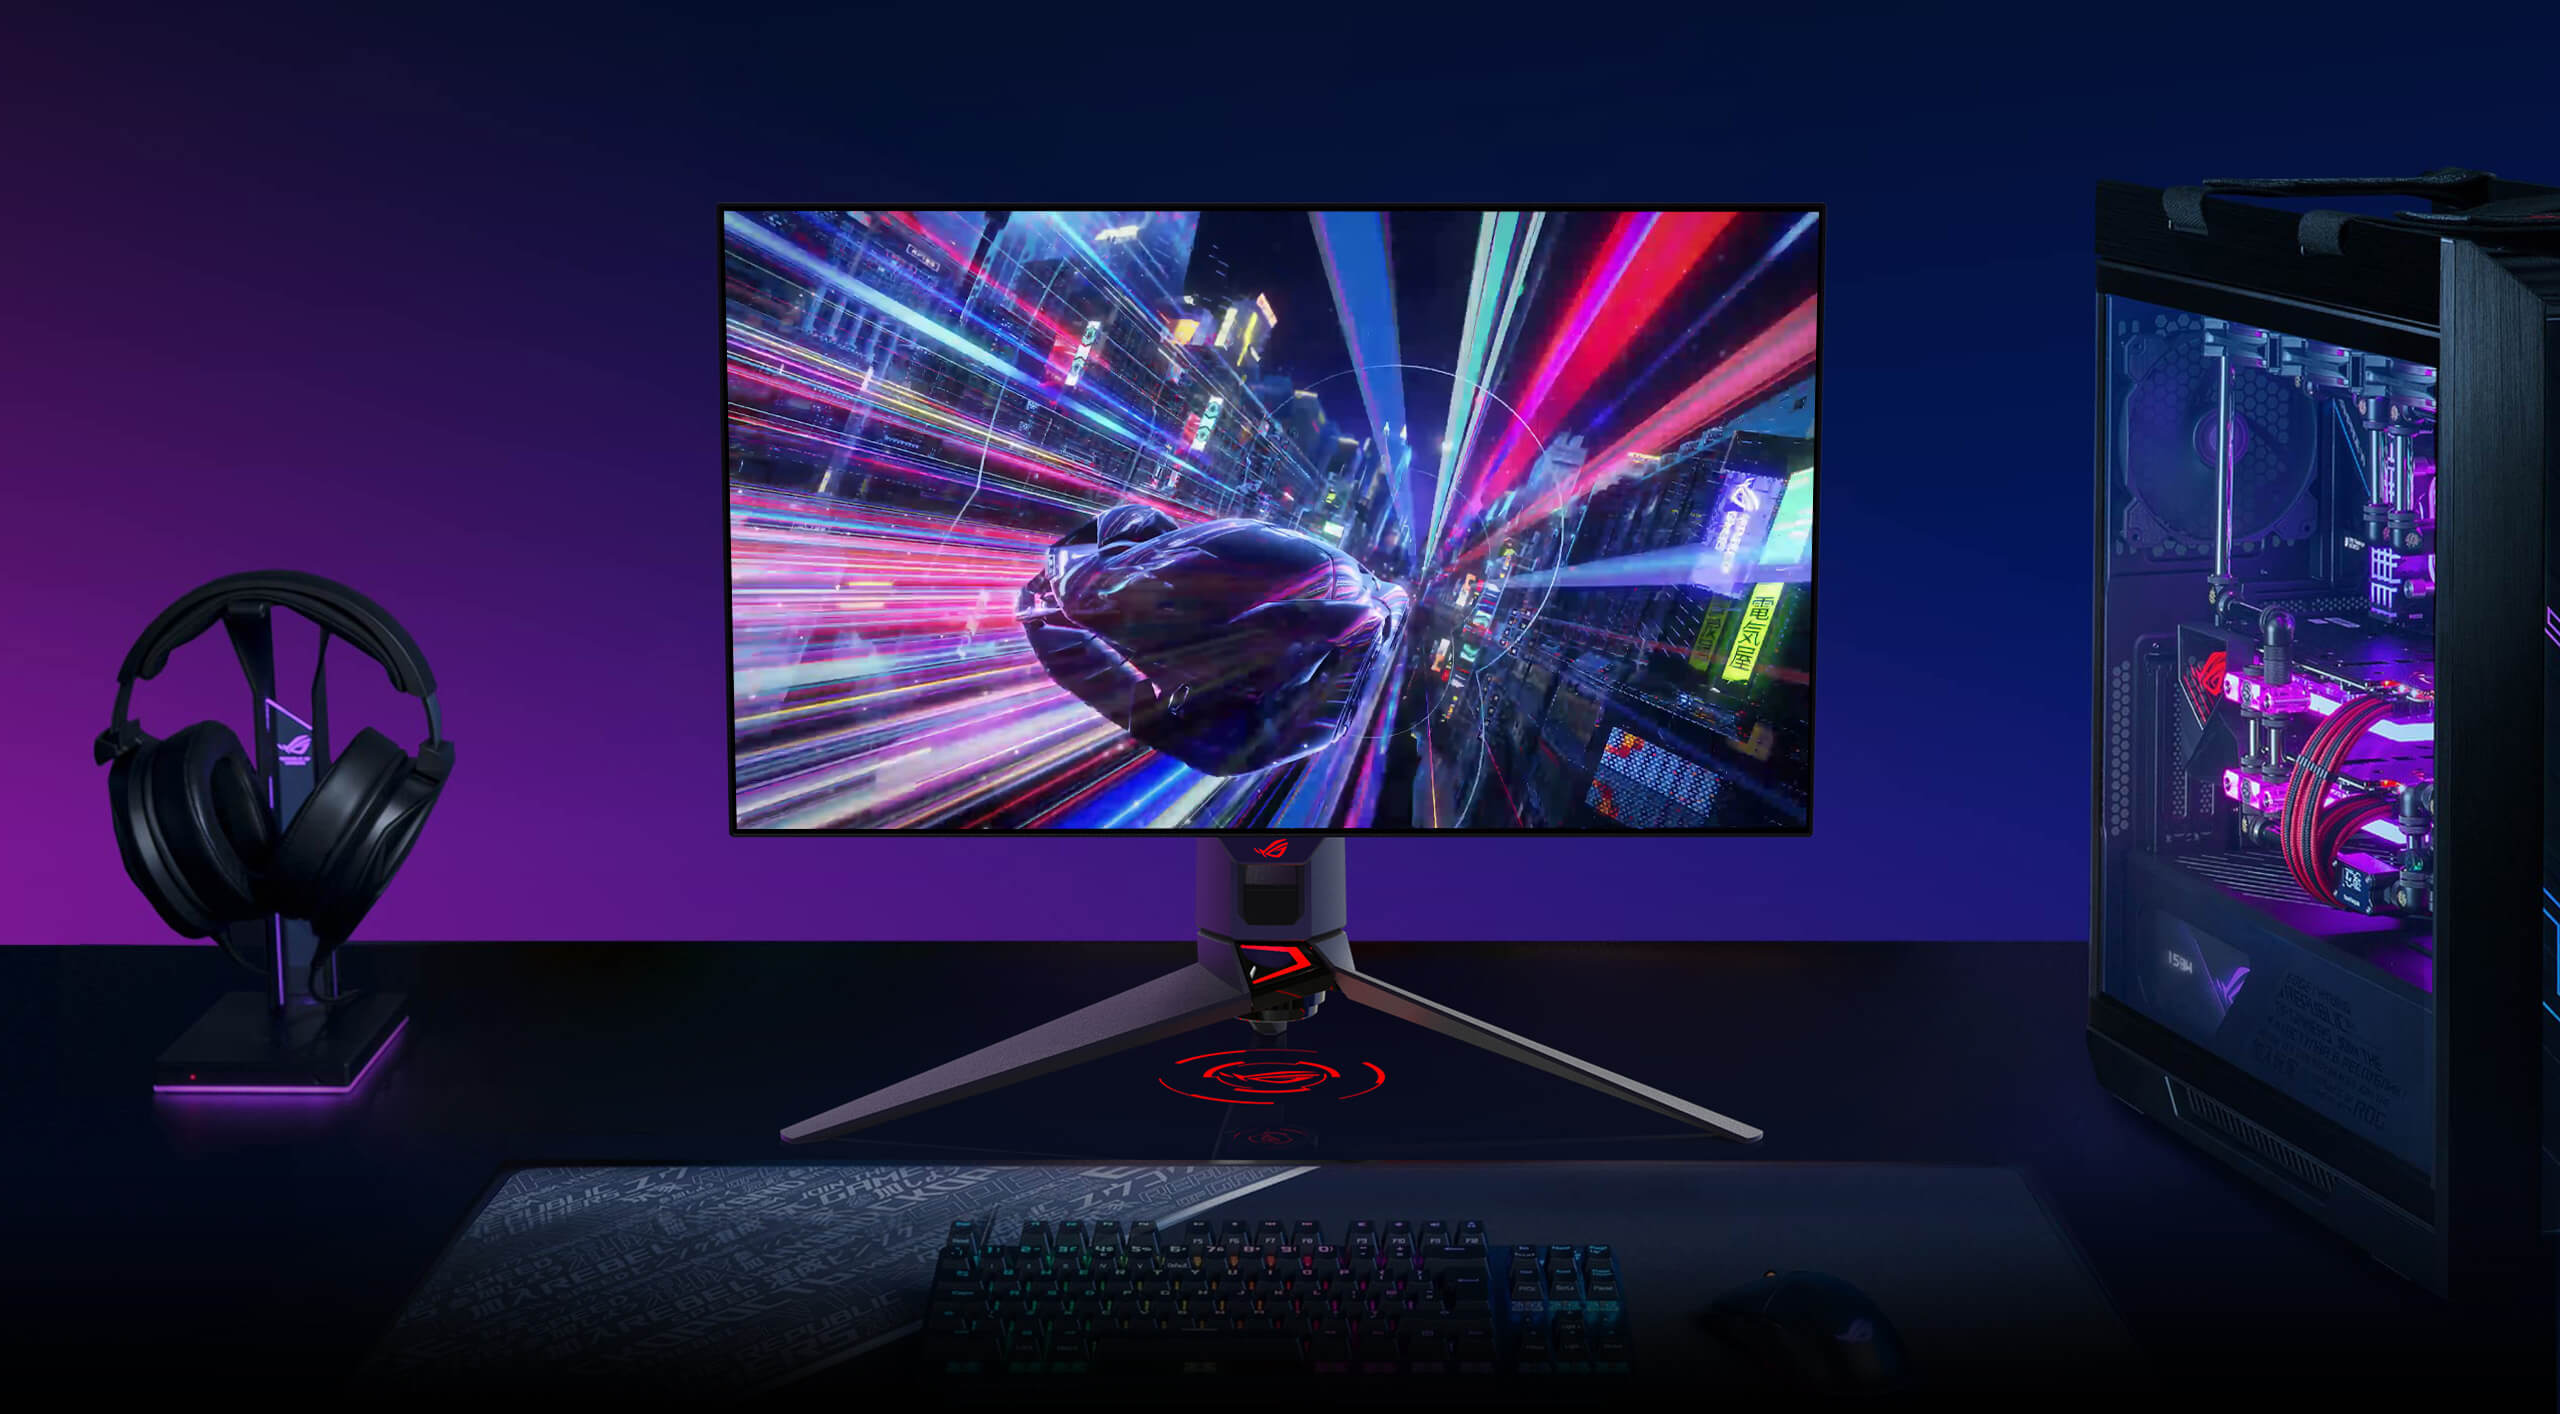 De PG27AQDM is een 27" 240Hz OLED gaming-monitor die uitzonderlijke gaming-beelden biedt.